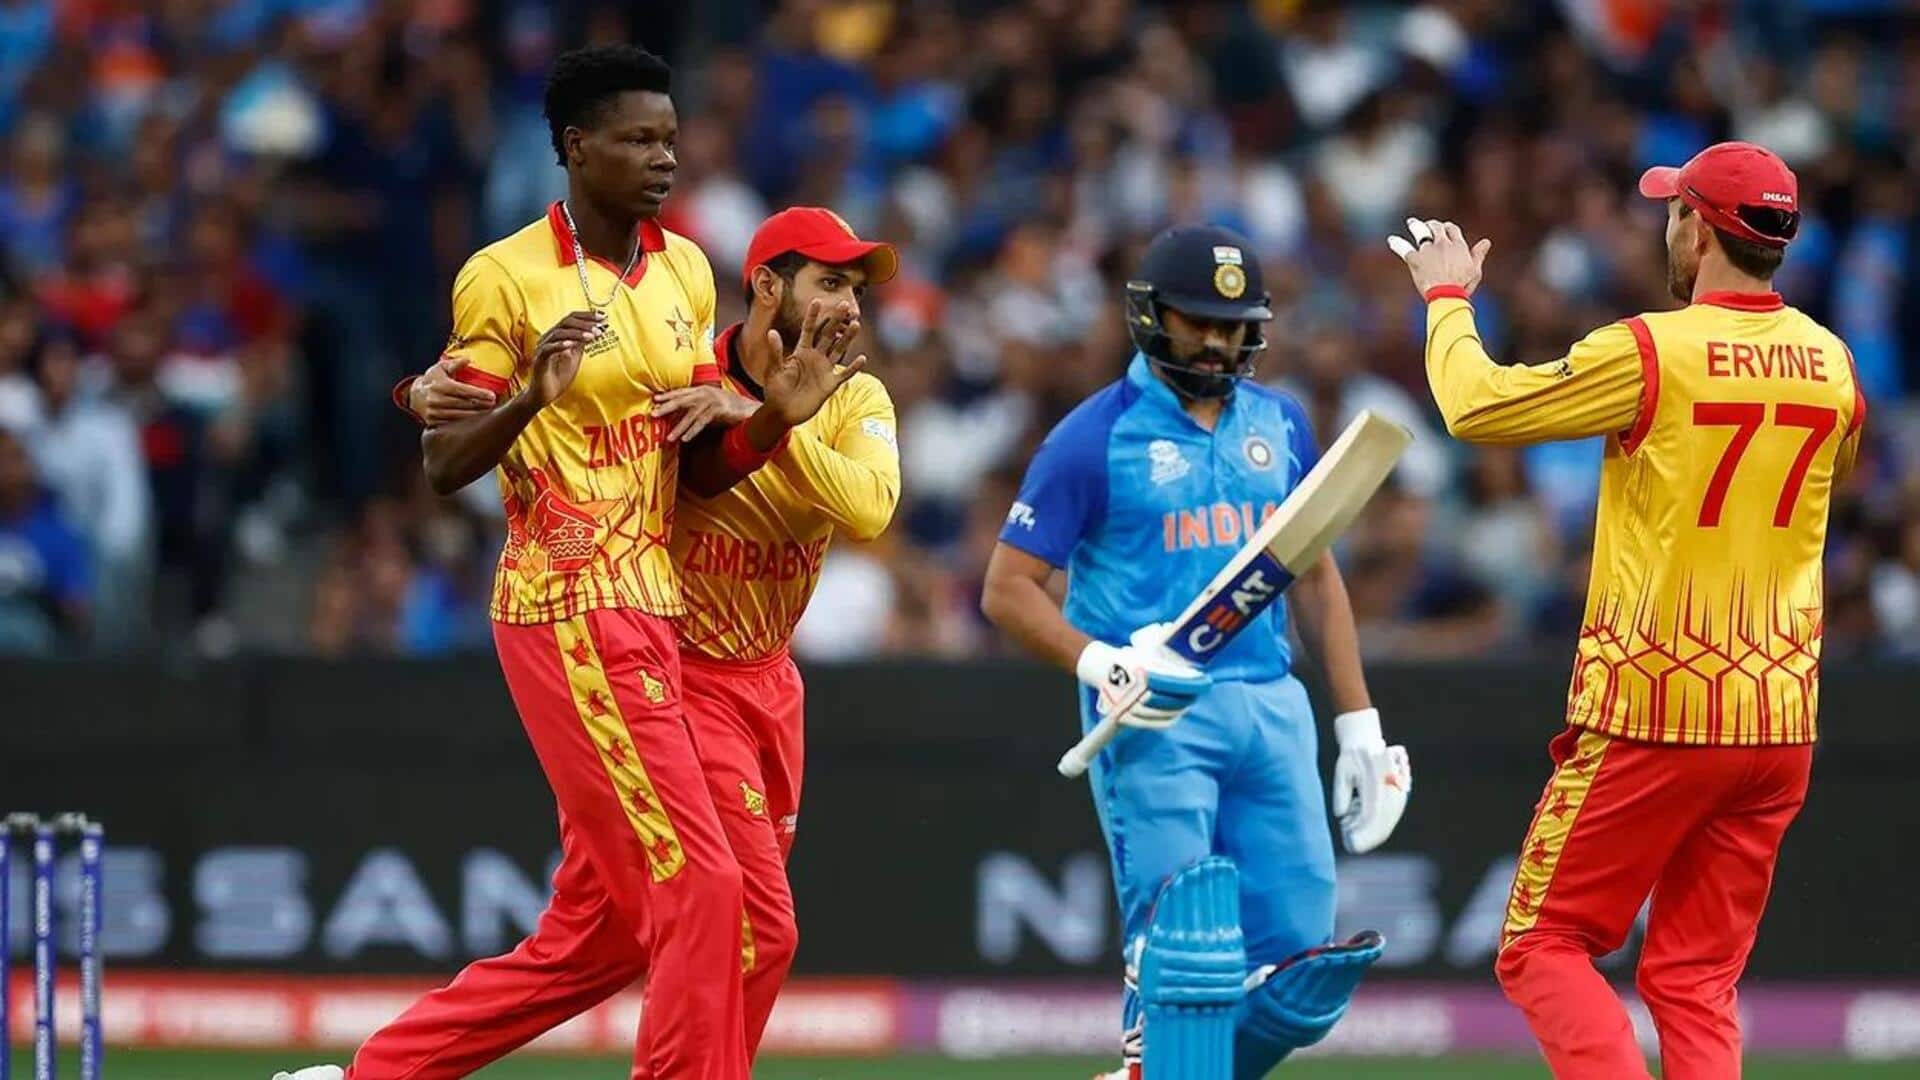 भारतीय क्रिकेट टीम जिम्बाब्वे के खिलाफ जुलाई में 5 मैच की टी-20 सीरीज खेलेगी